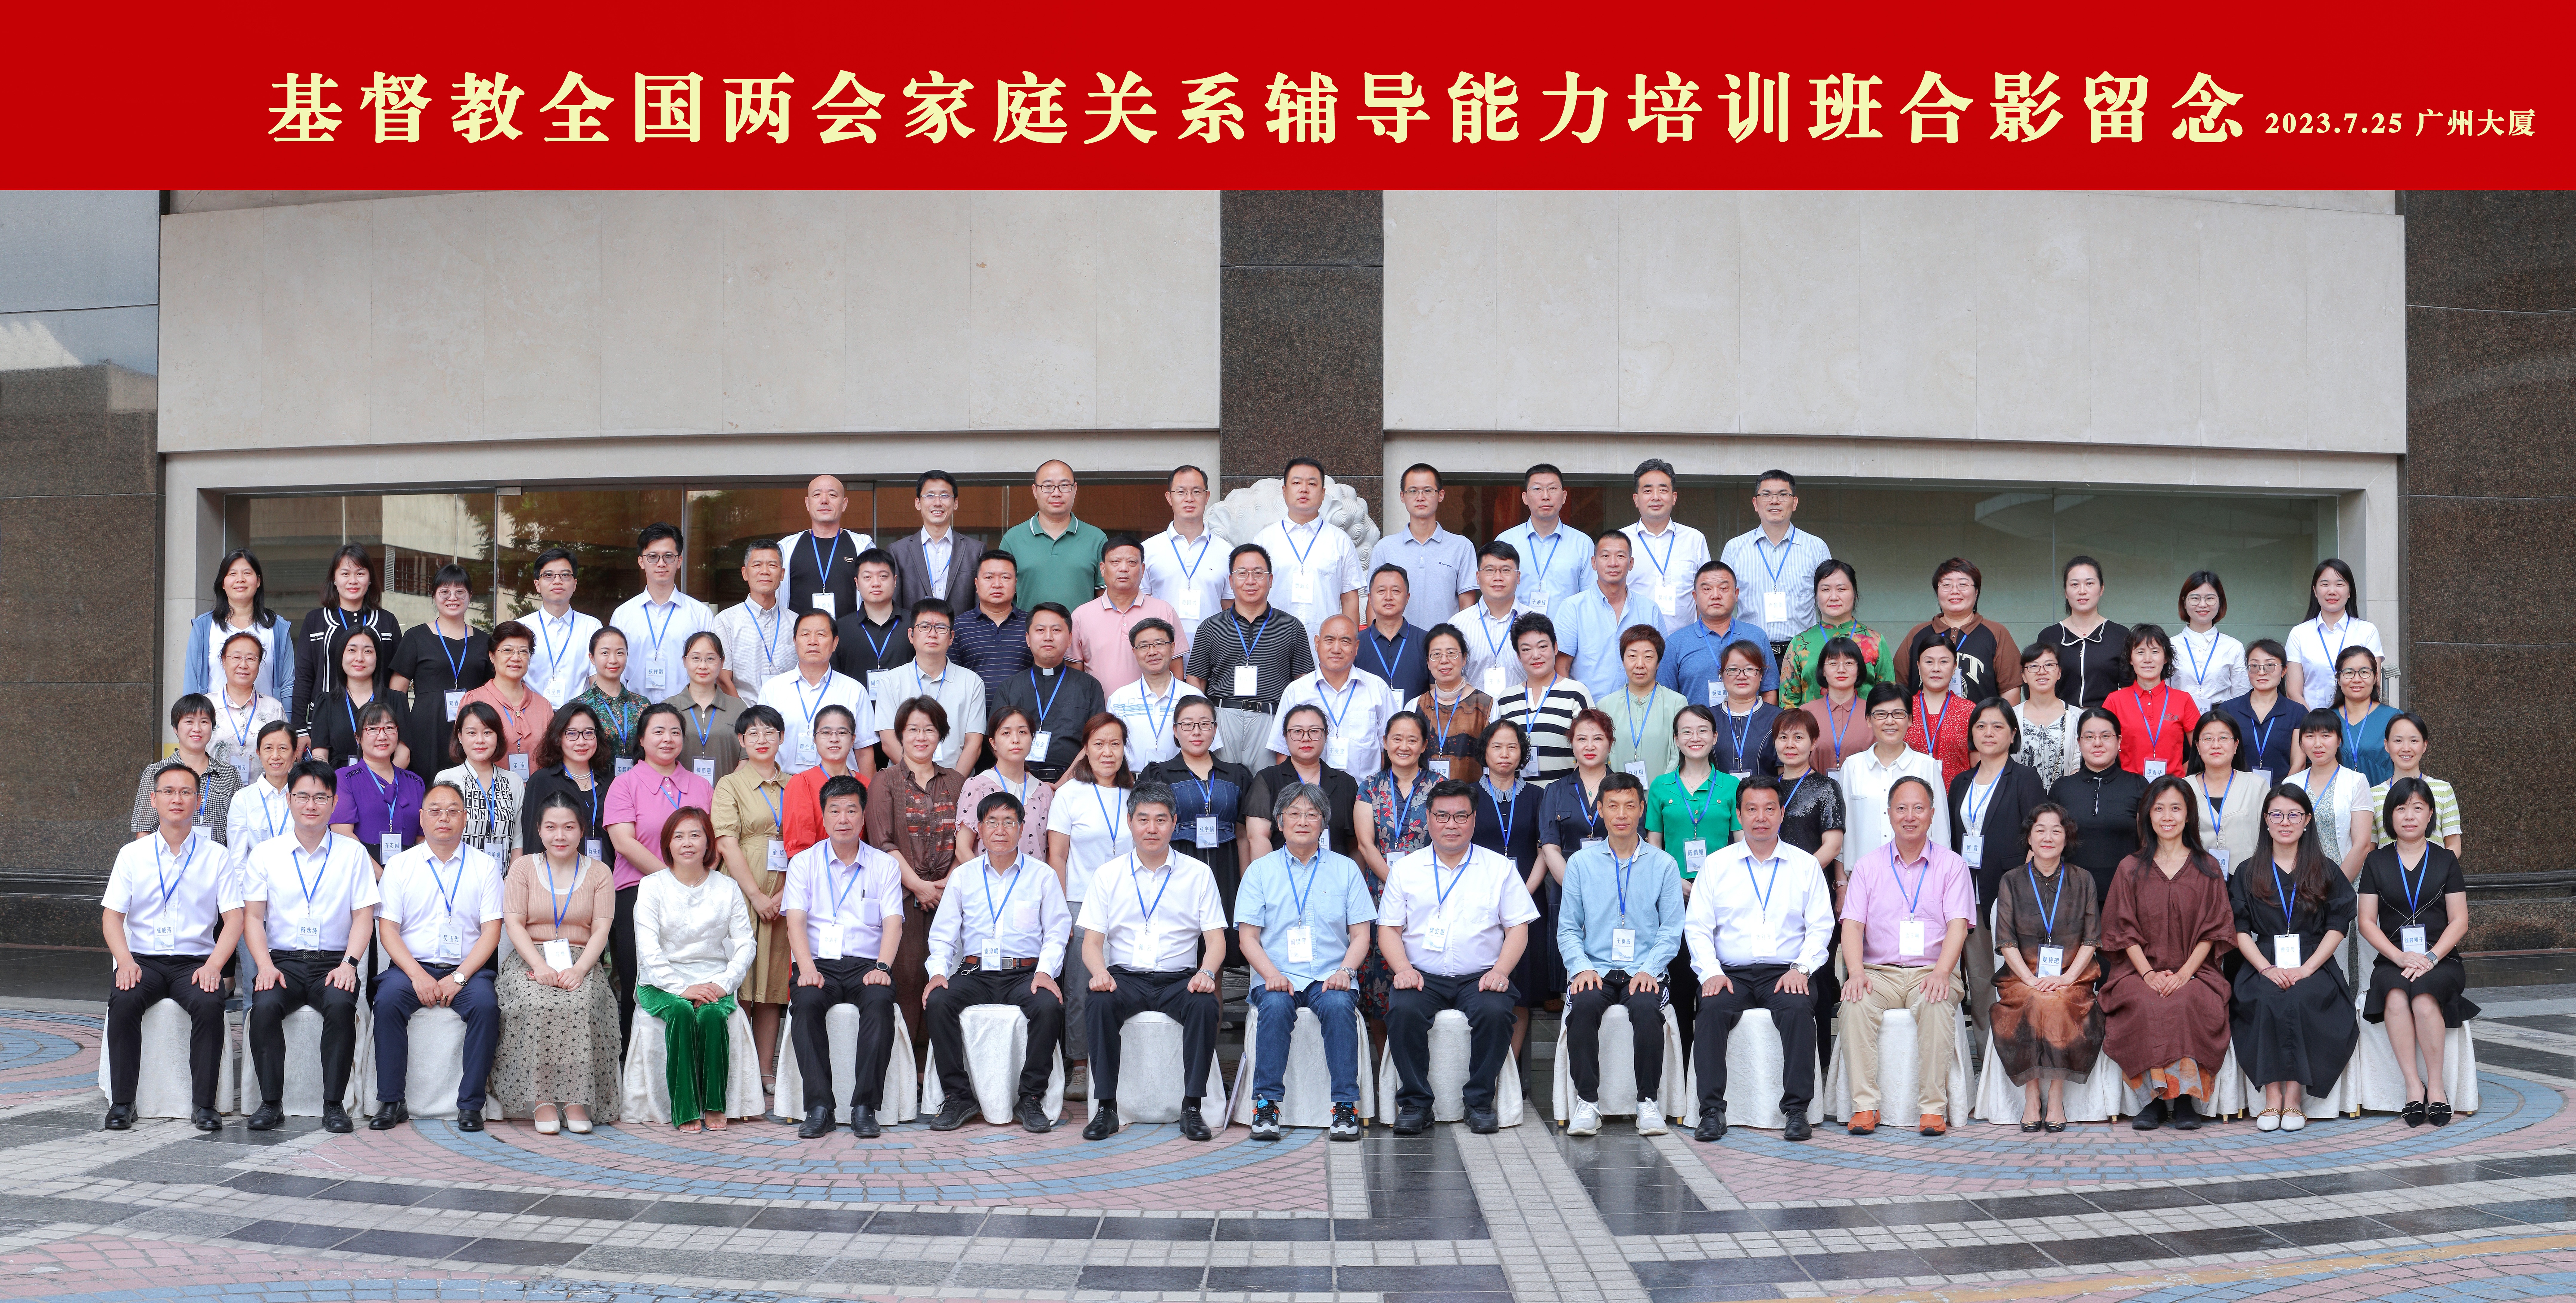 基督教全国两会家庭关系辅导能力培训班在广州成功举办